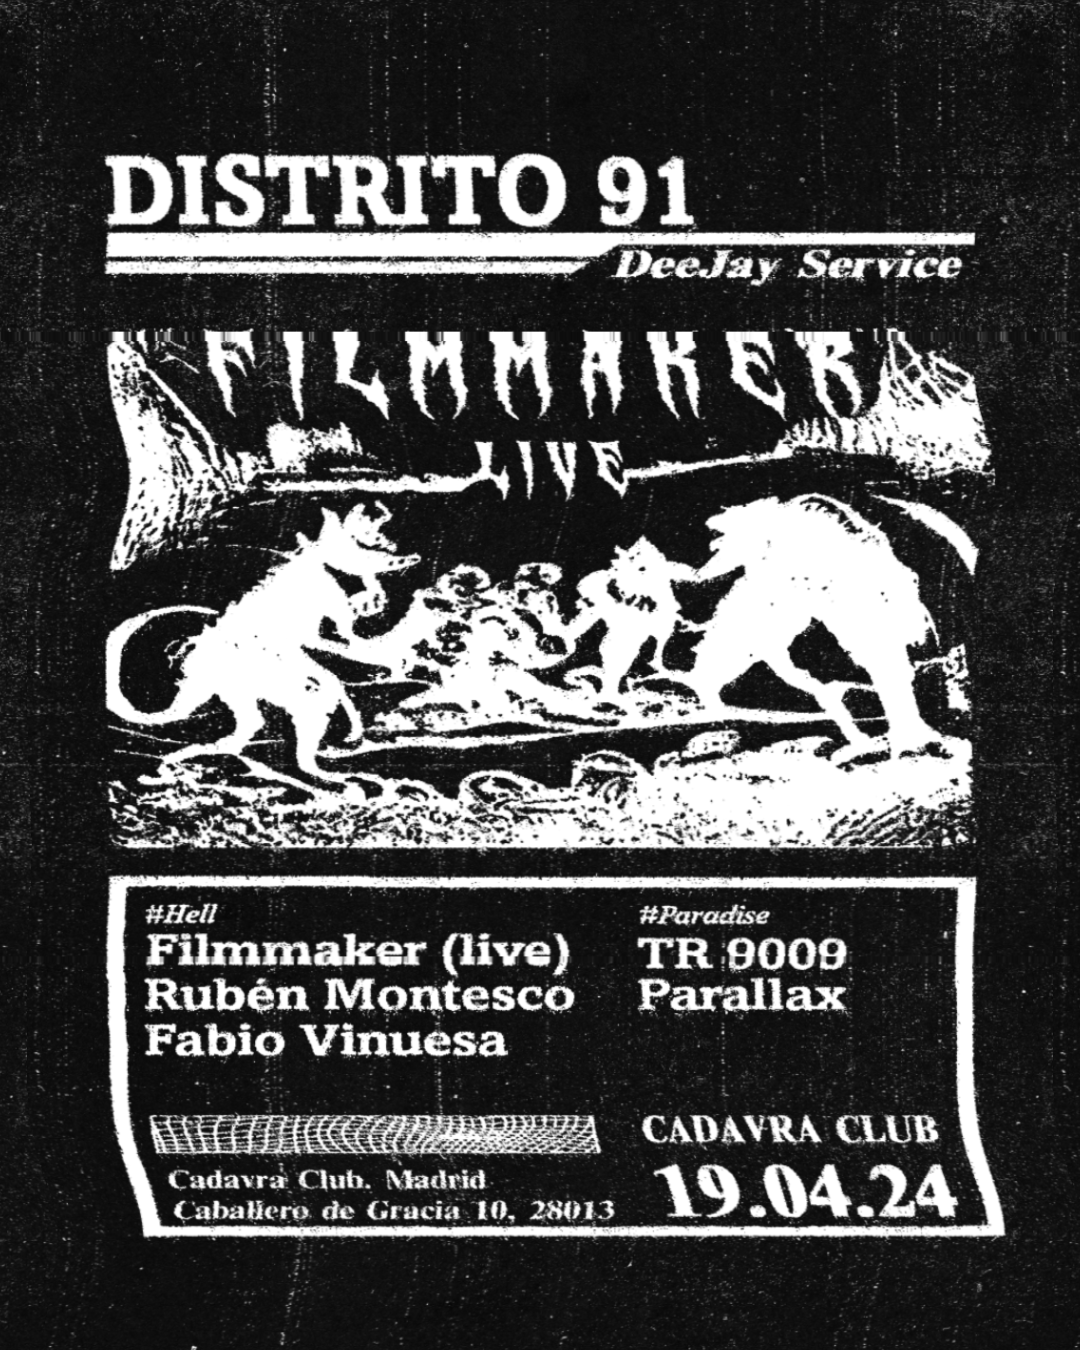 Distrito 91 presents Filmmaker live - Página frontal